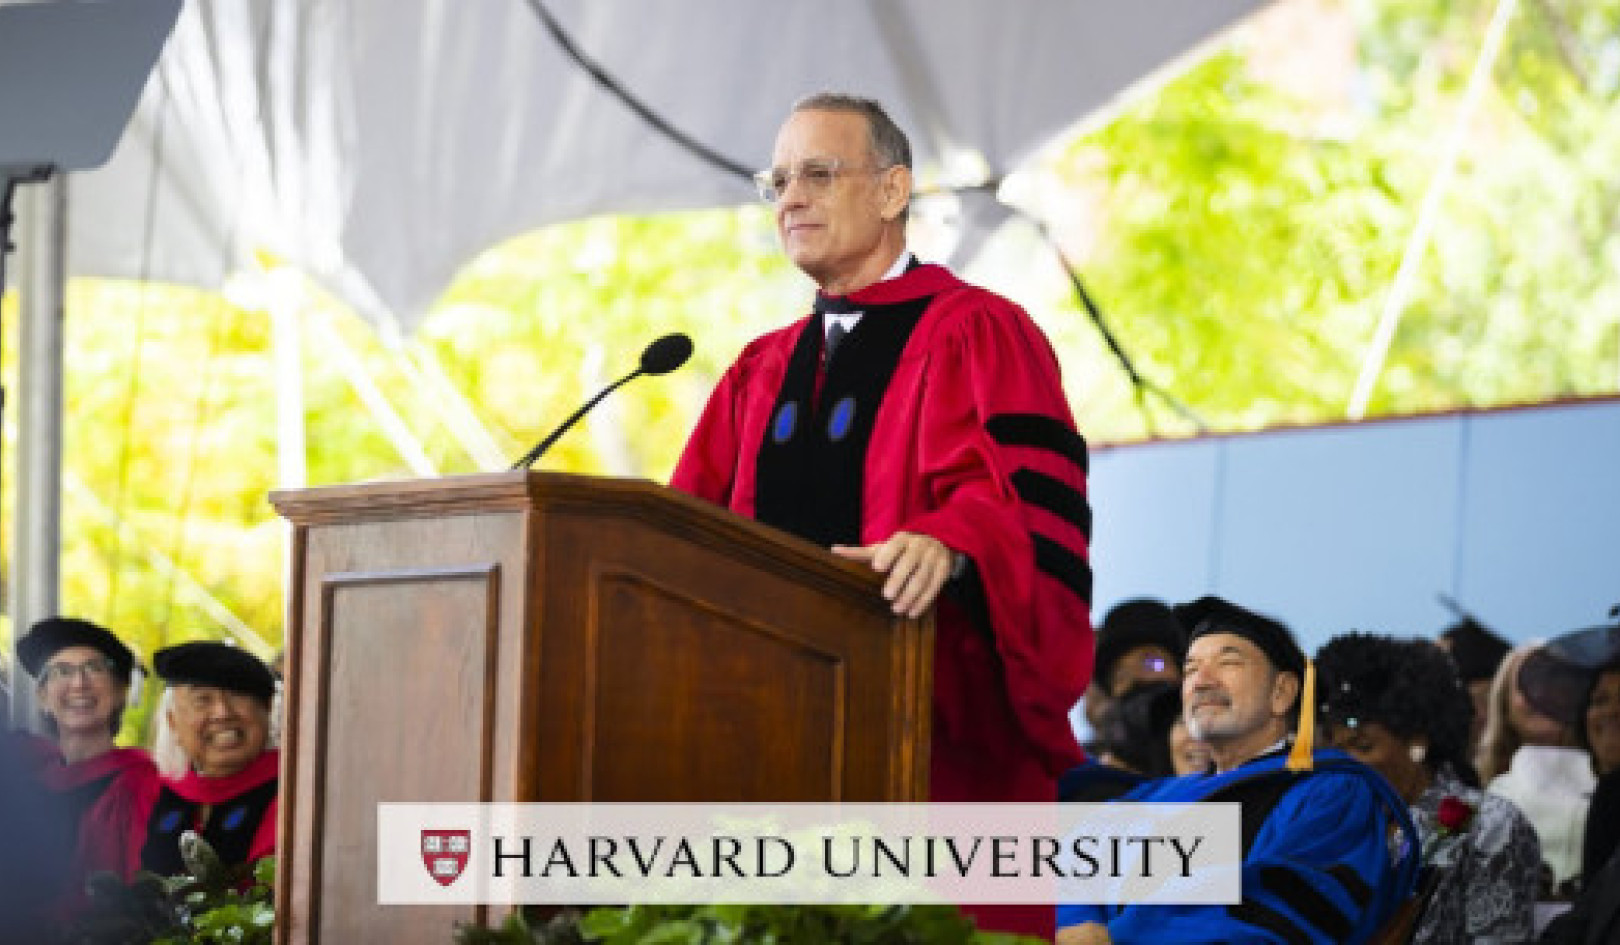 Tom Hanks inspirerer Harvard-kandidater til å omfavne sannhet, rettferdighet og den amerikanske måten